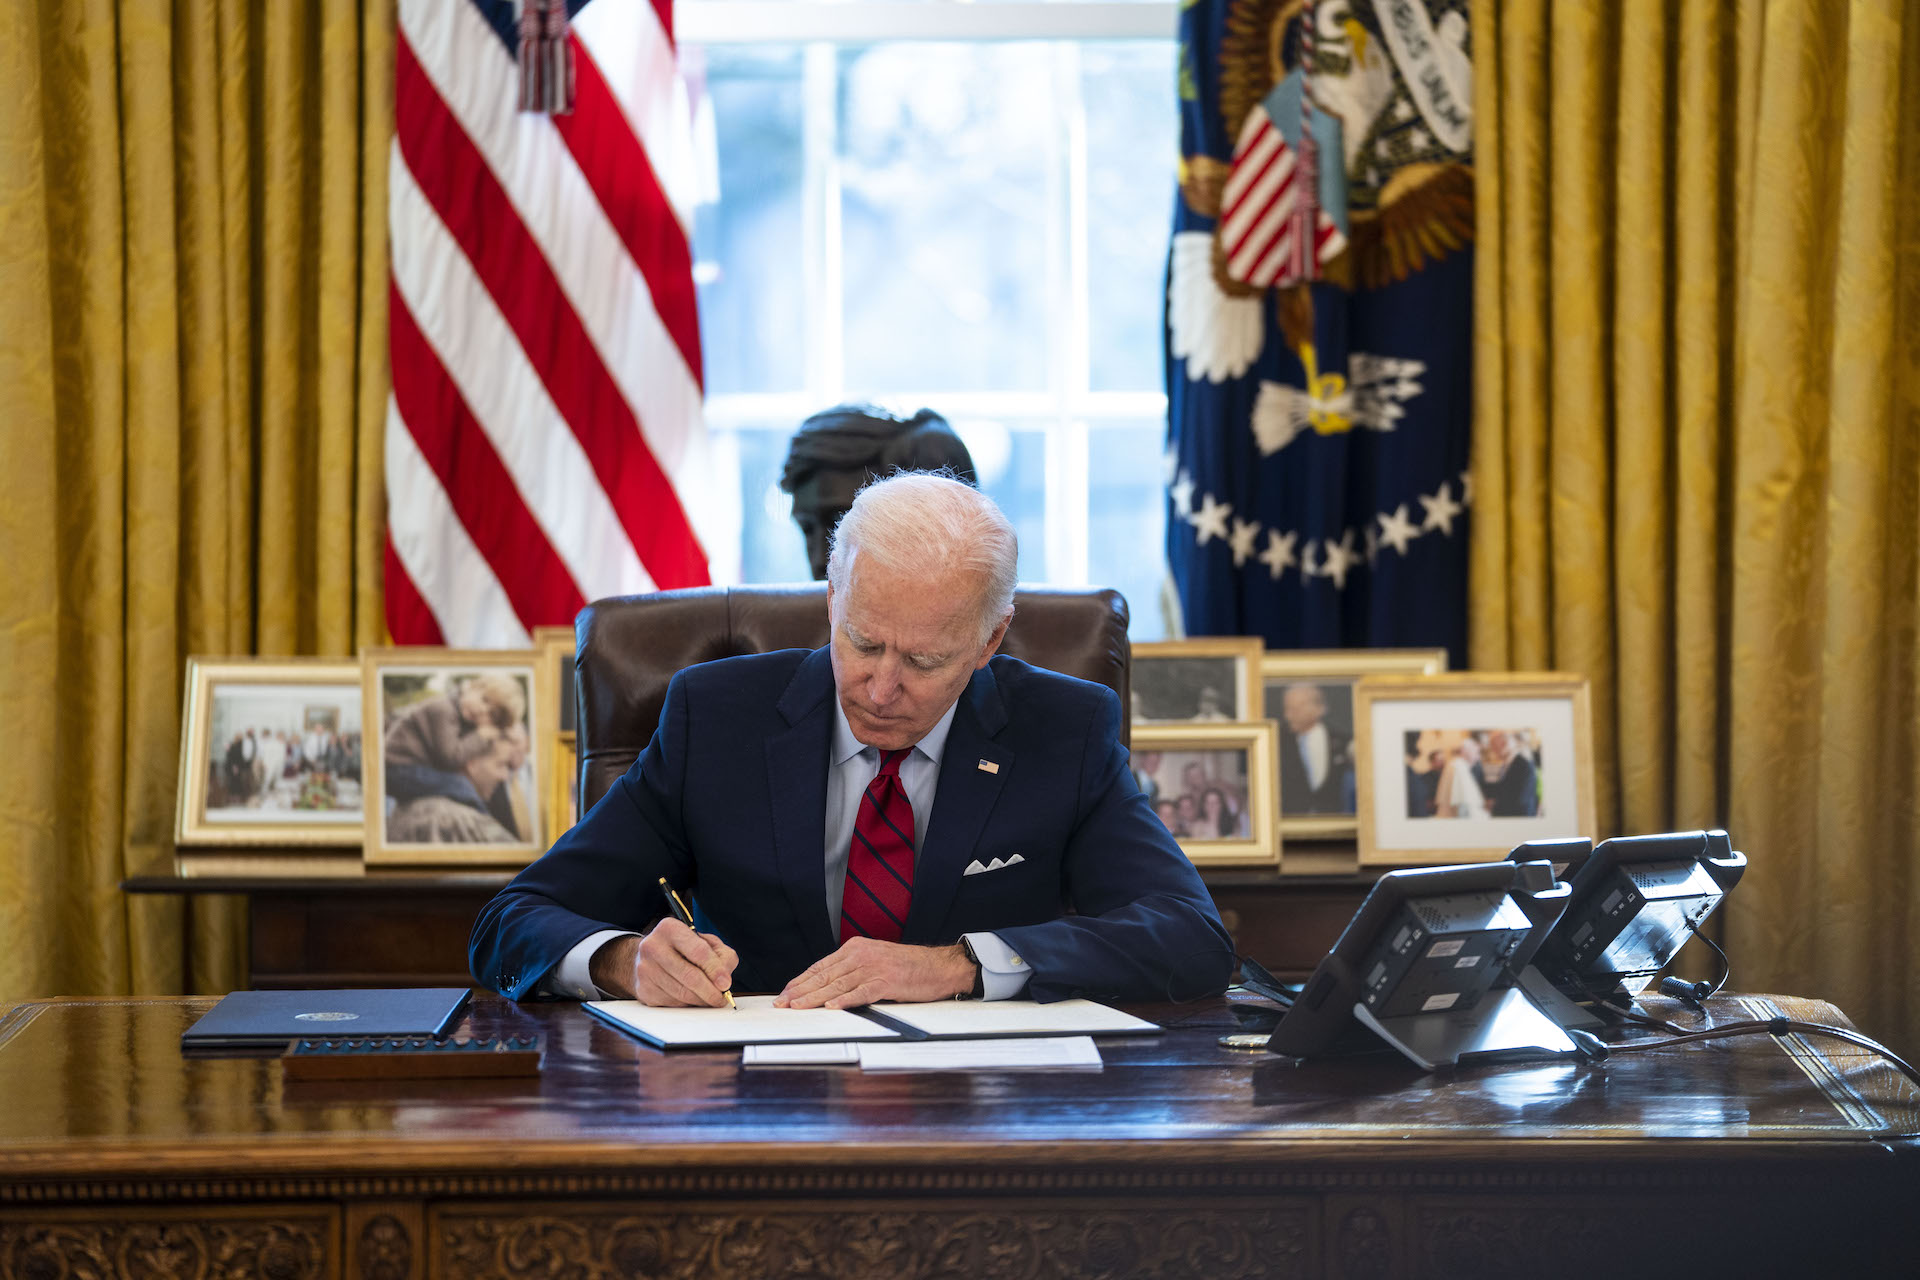 An image of President Joe Biden in the Oval Office.